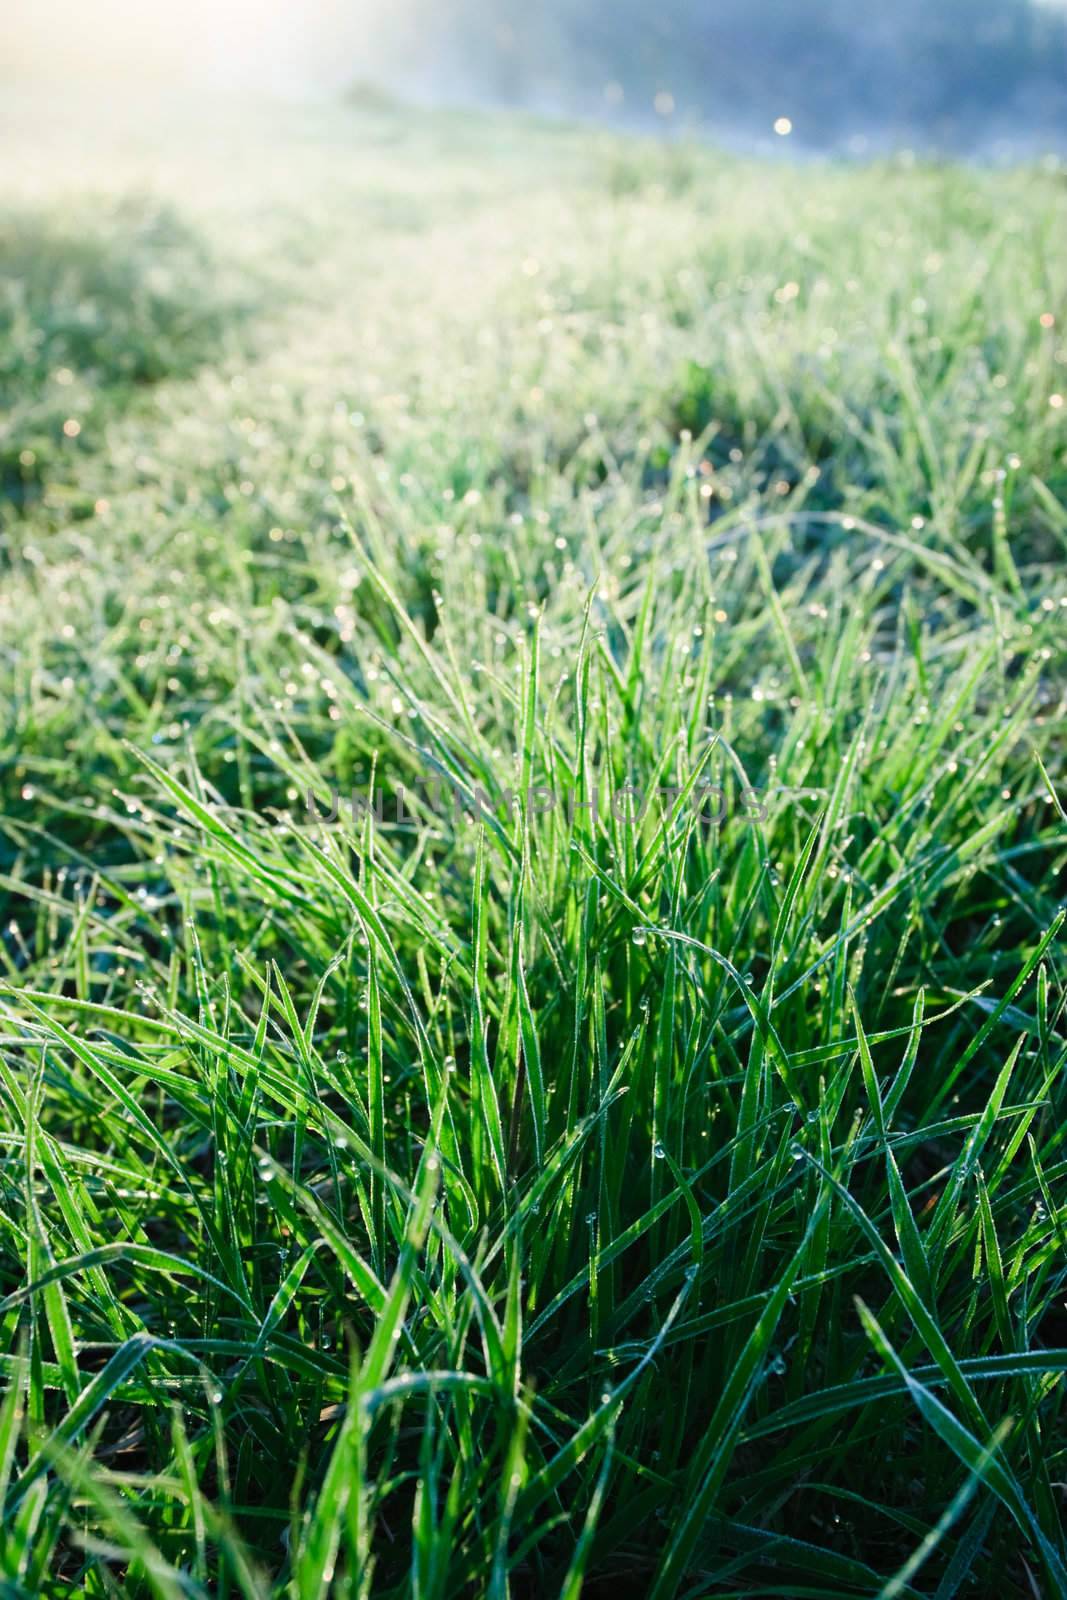 Frozen Grass by naumoid